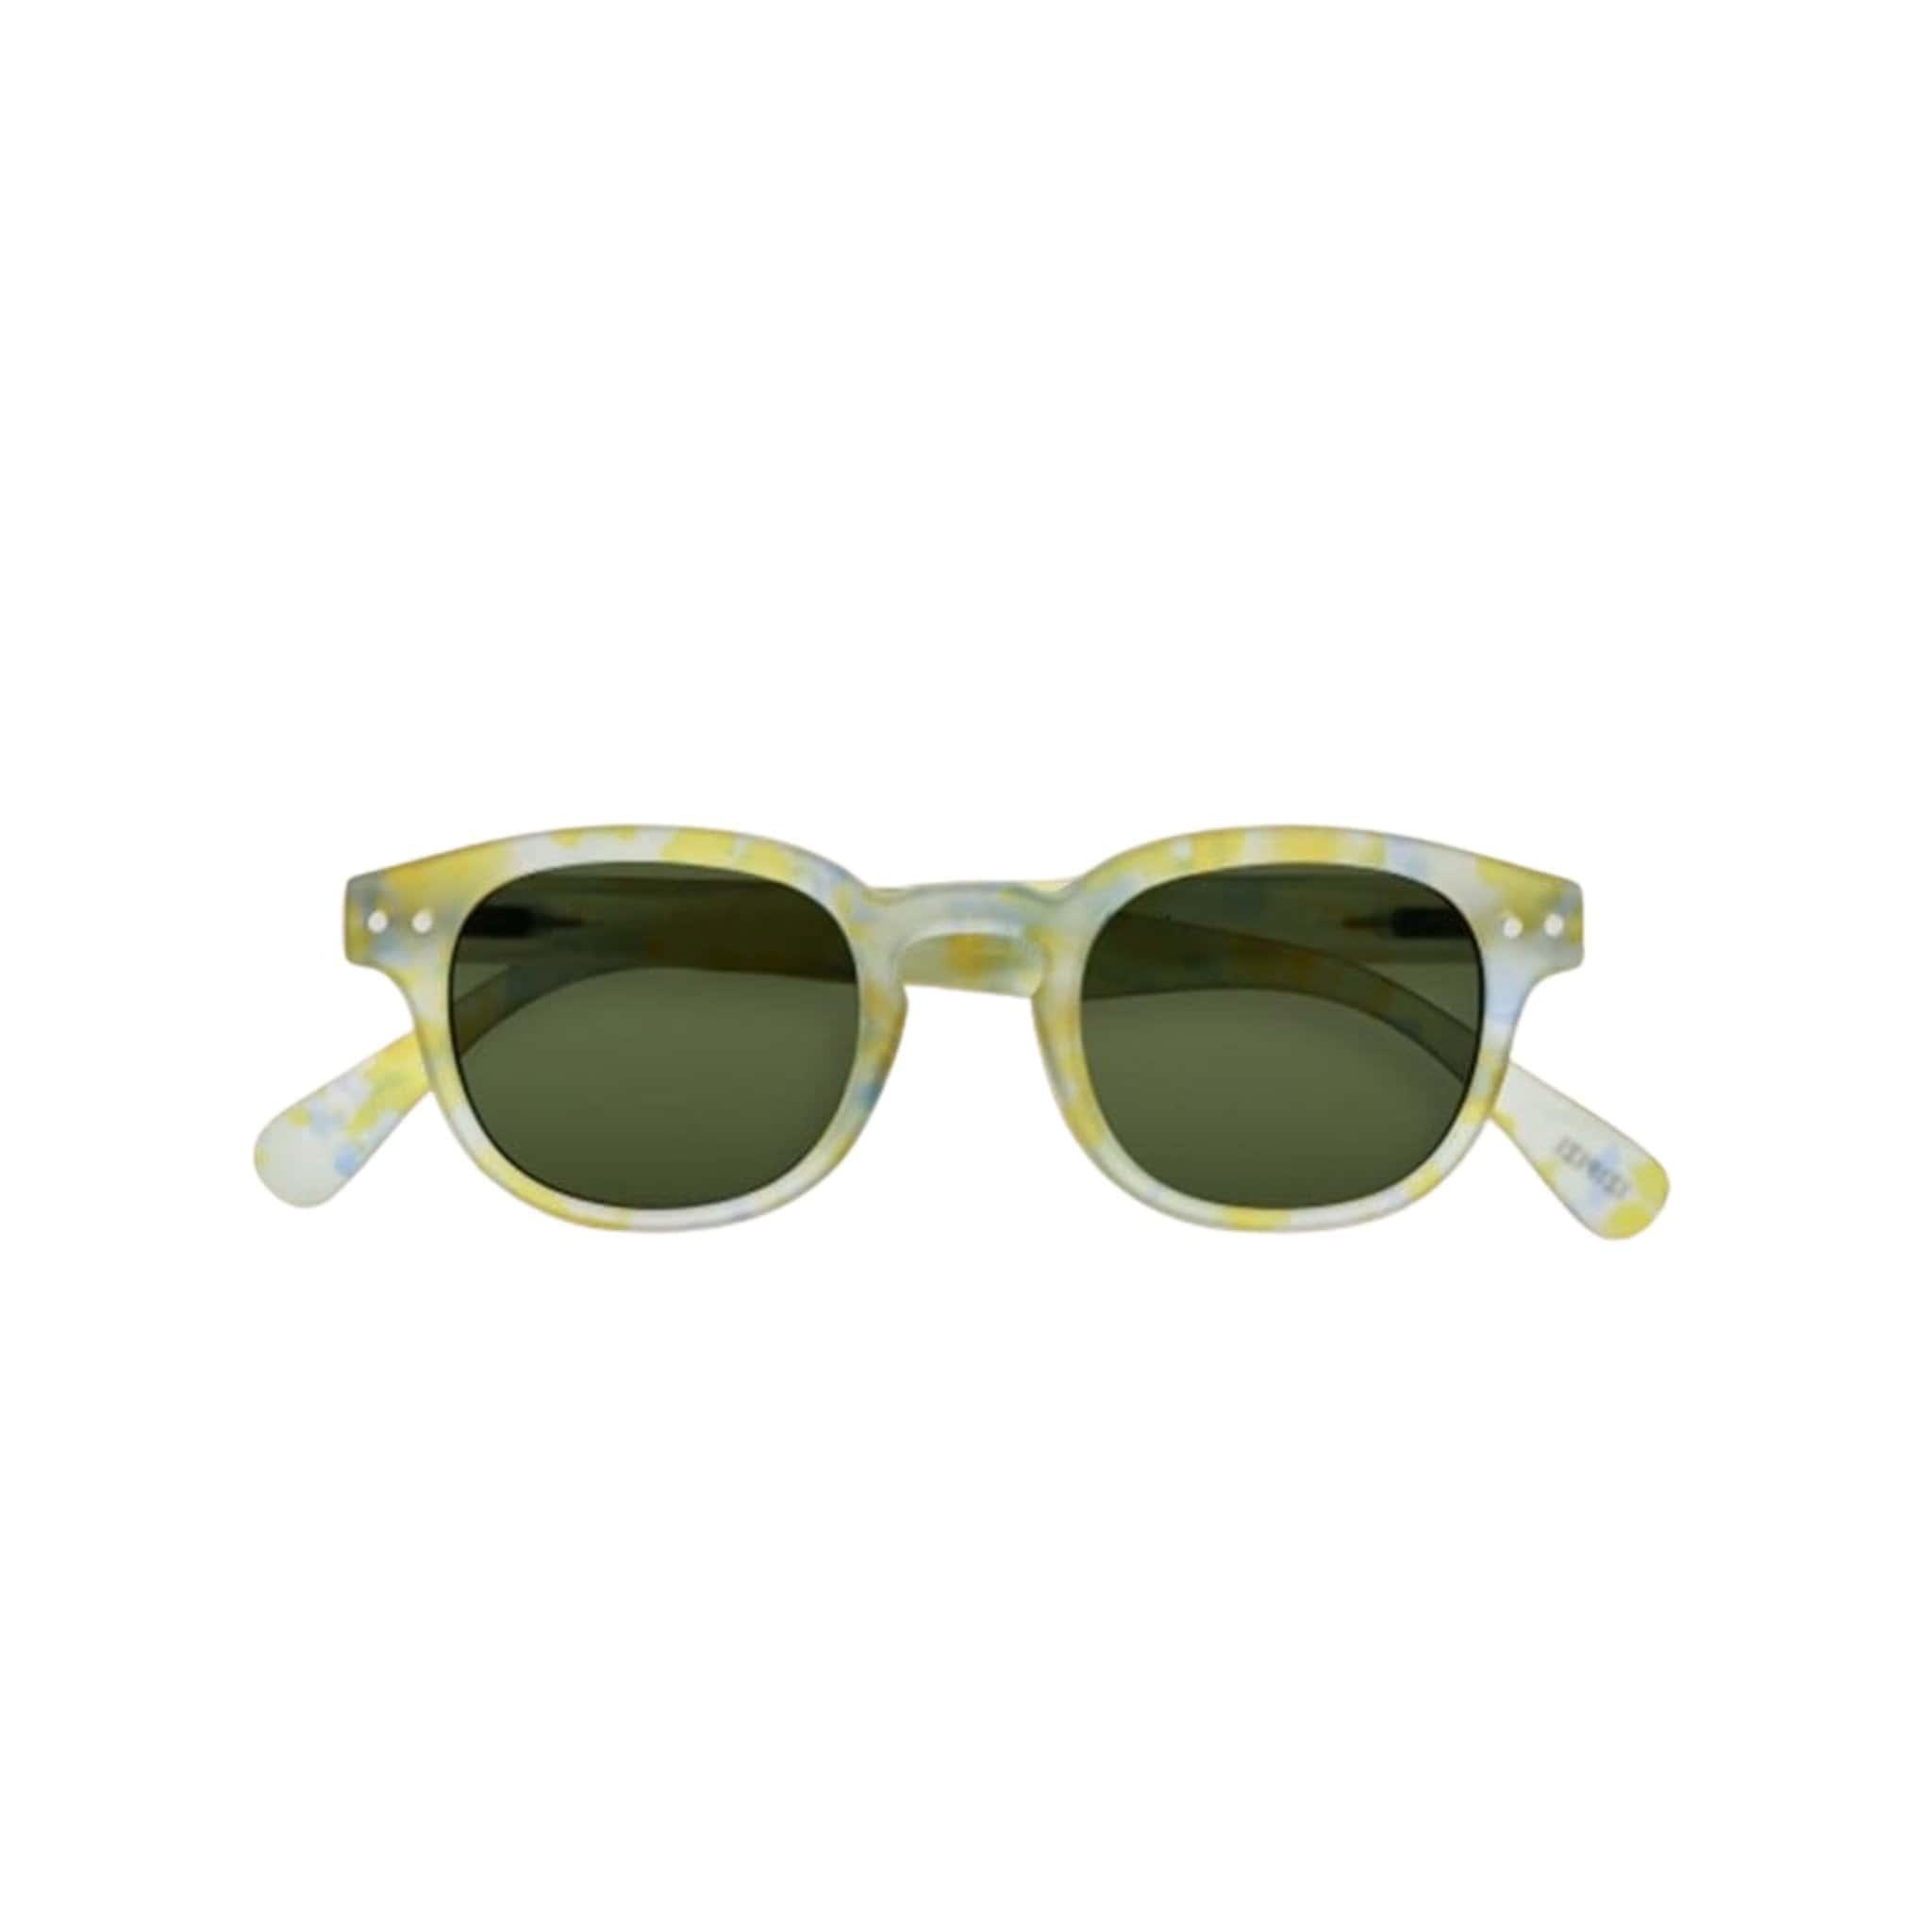 IZIPIZI kids sunglasses Junior C - Oasis Collection Joyful Cloud